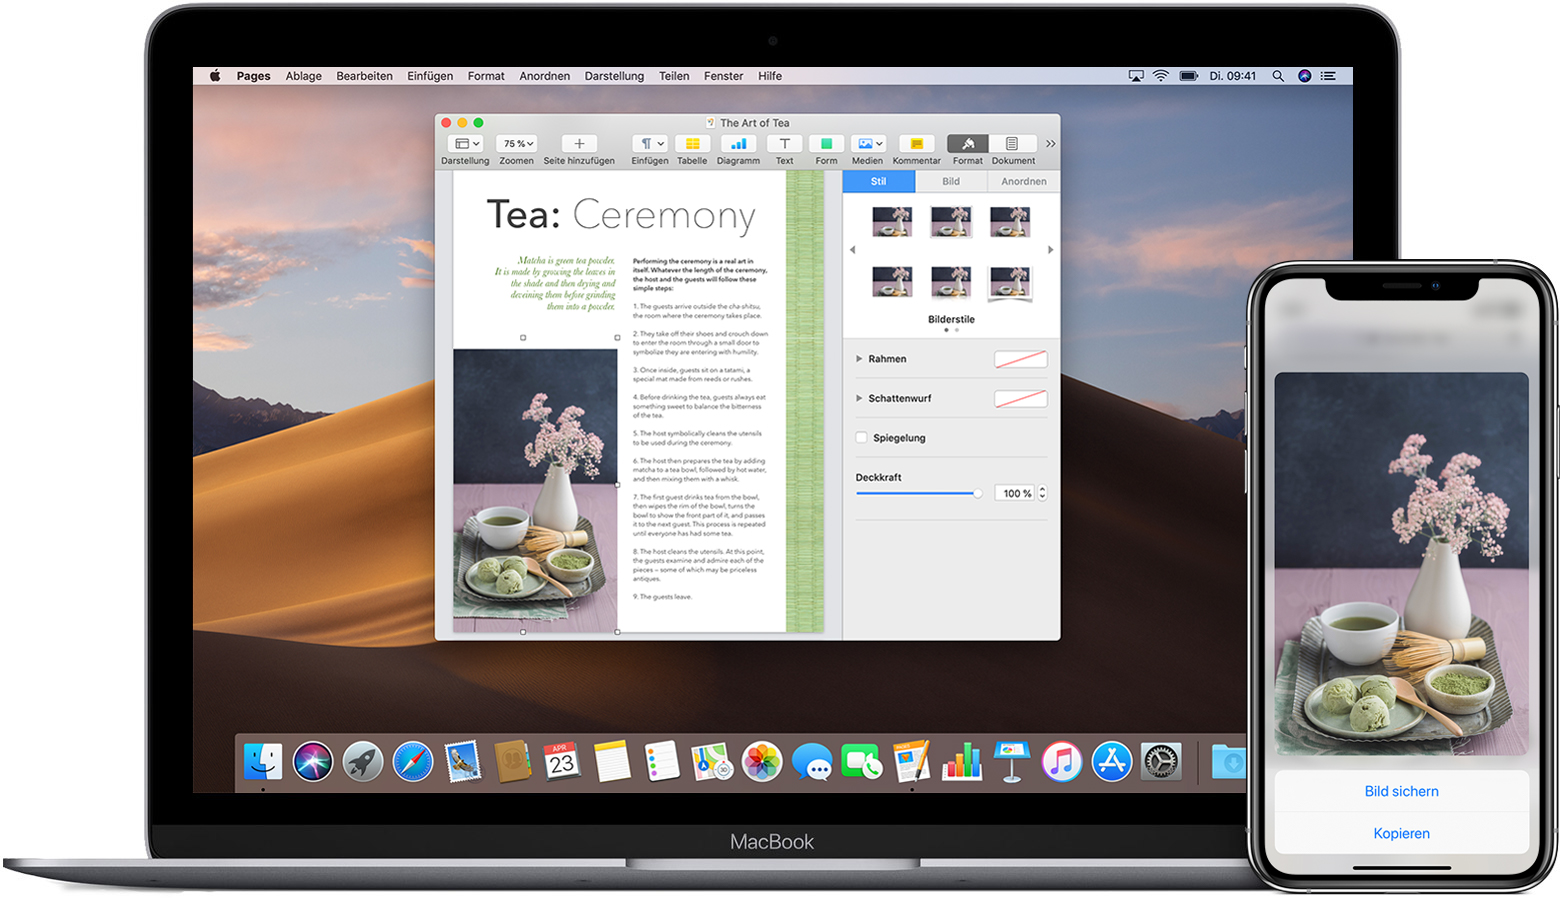 Ein iPhone, auf dem ein Bild mit der Option "Kopieren" angezeigt wird, neben einem MacBook, auf dem ein Pages-Dokument geöffnet ist, das dasselbe Bild enthält.